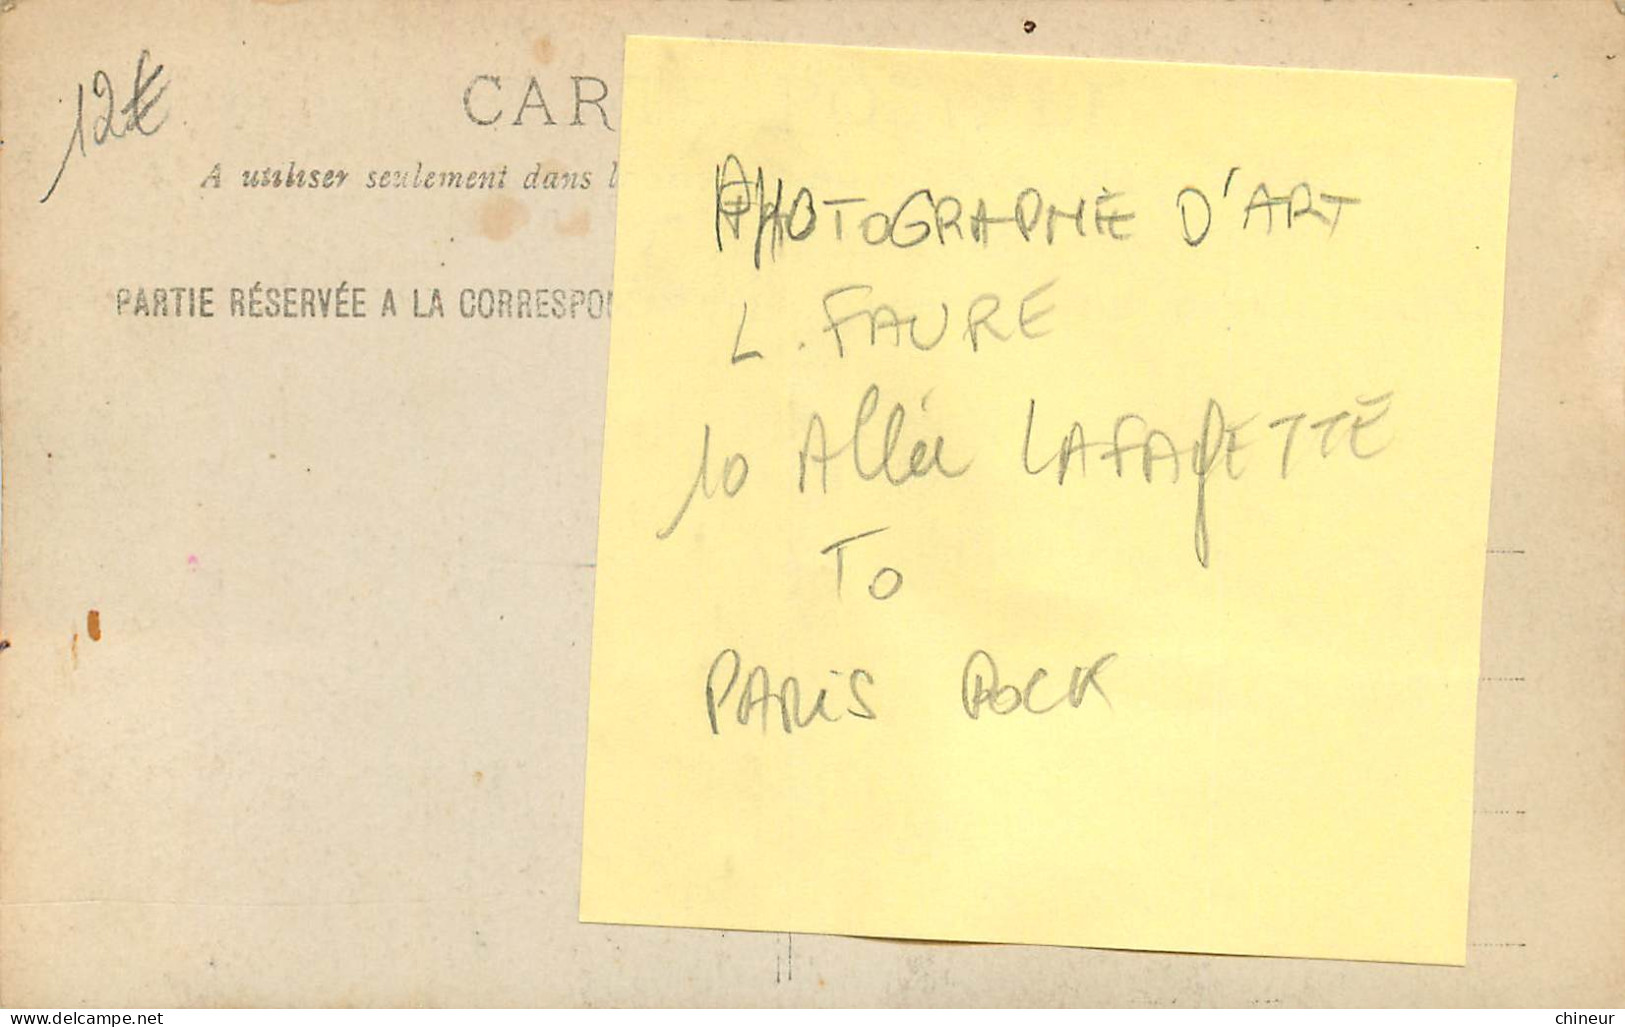 CARTE PHOTO AUTOMOBILE TACOT PHOTOGRAPHE D'ART L.FAURE 10 ALLEE LAFAYETTE PARIS POCK - Taxi & Carrozzelle